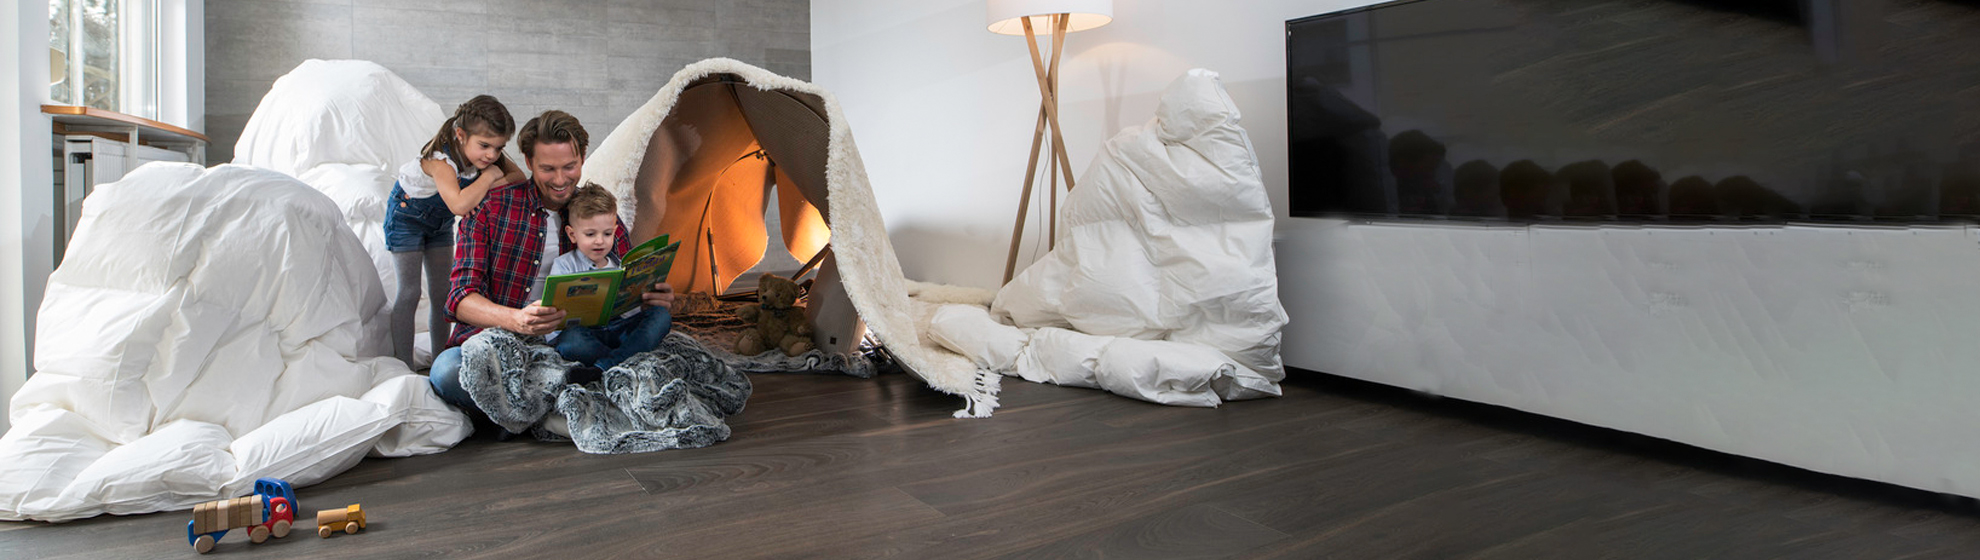 Ein Vater sitzt mit seinen beiden Kindern im Wohnzimmer am Boden und blättert einen Bildband durch. Im Hintergrund ein selbstgebautes Zelt aus Bettlaken und Decken.